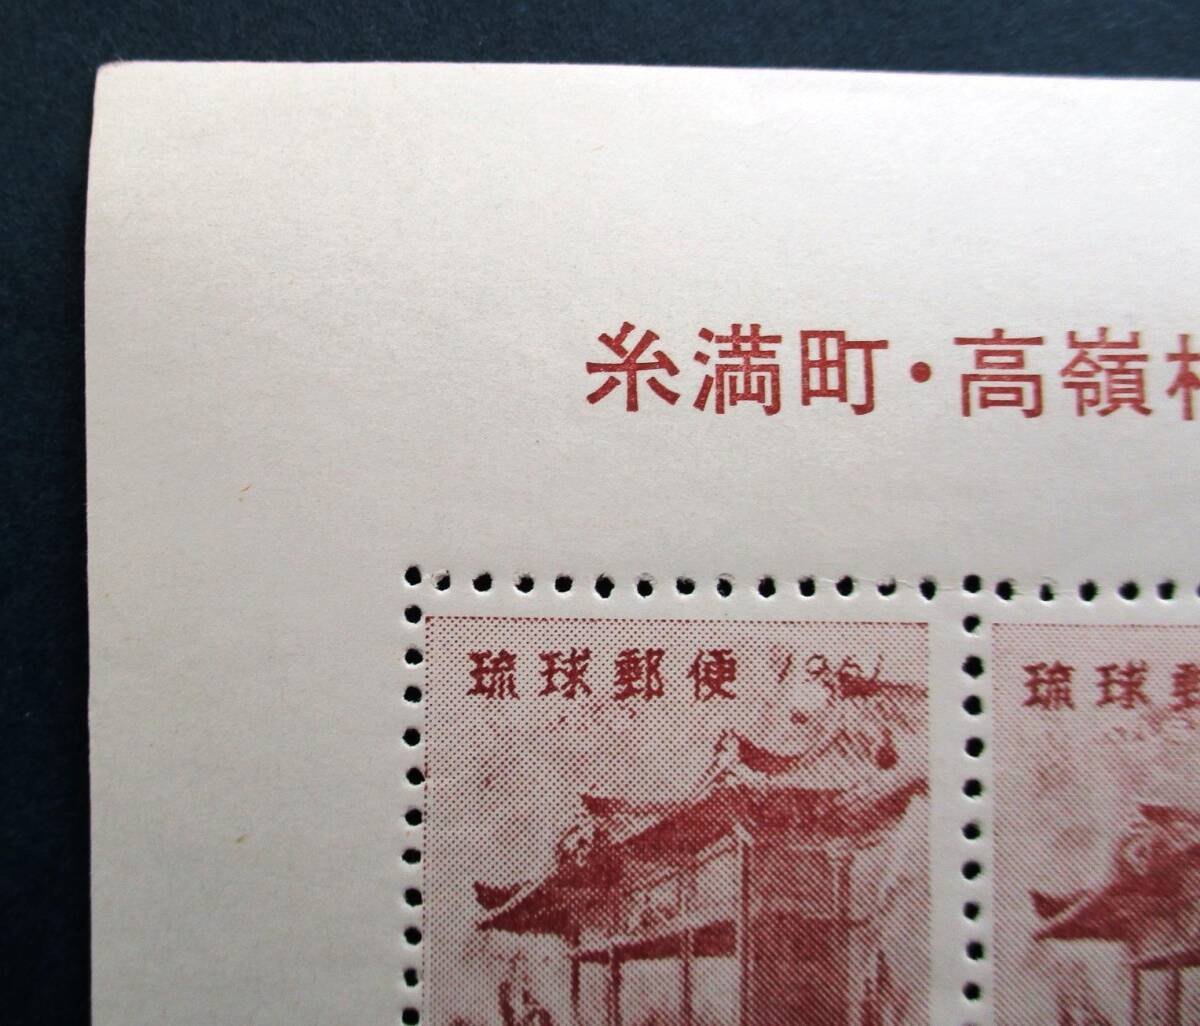 沖縄切手・琉球切手 希少品 中丸印刷所謹製 町村合併記念 20面シート R41 ほぼ美品ですが、ミミに微かにヨレがあります。 画像参照の画像2